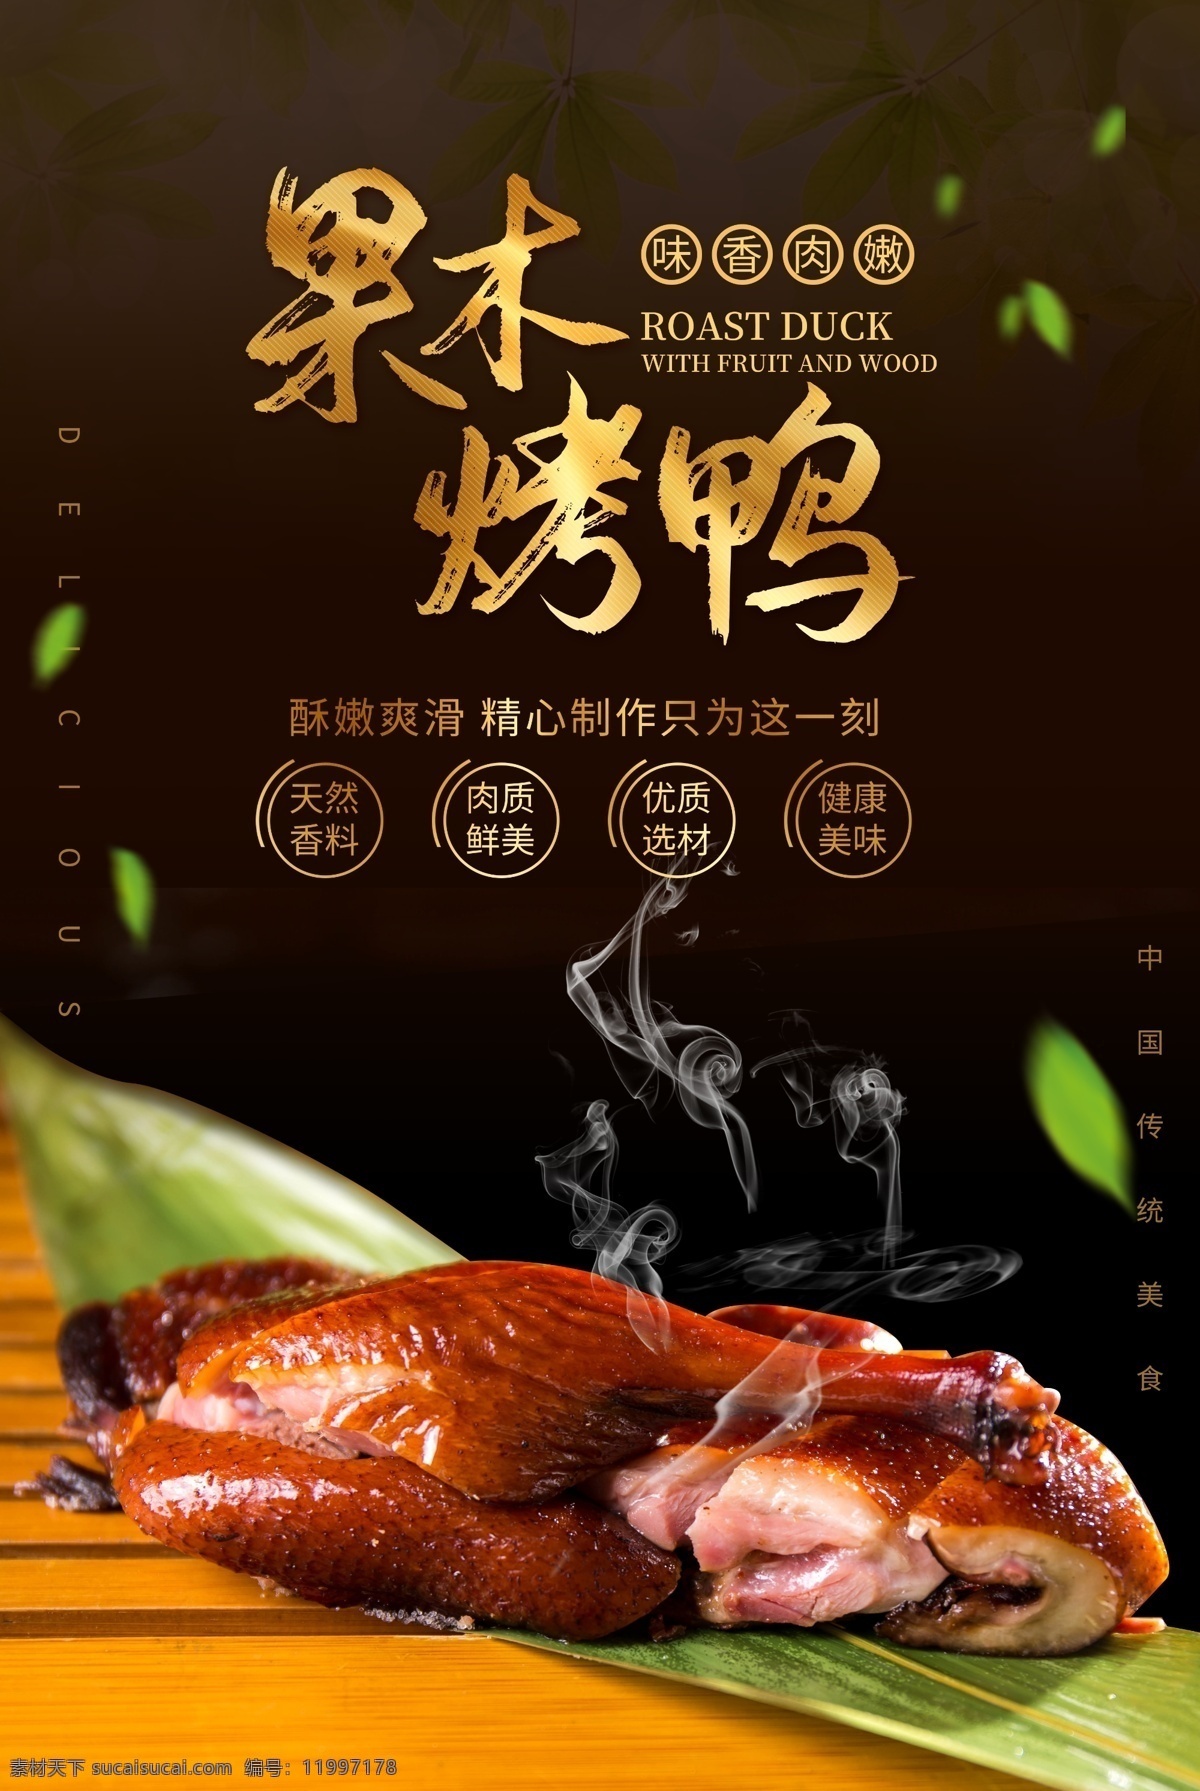 果木 烤鸭 美食 活动 宣传海报 素材图片 果木烤鸭 宣传 海报 餐饮美食 类